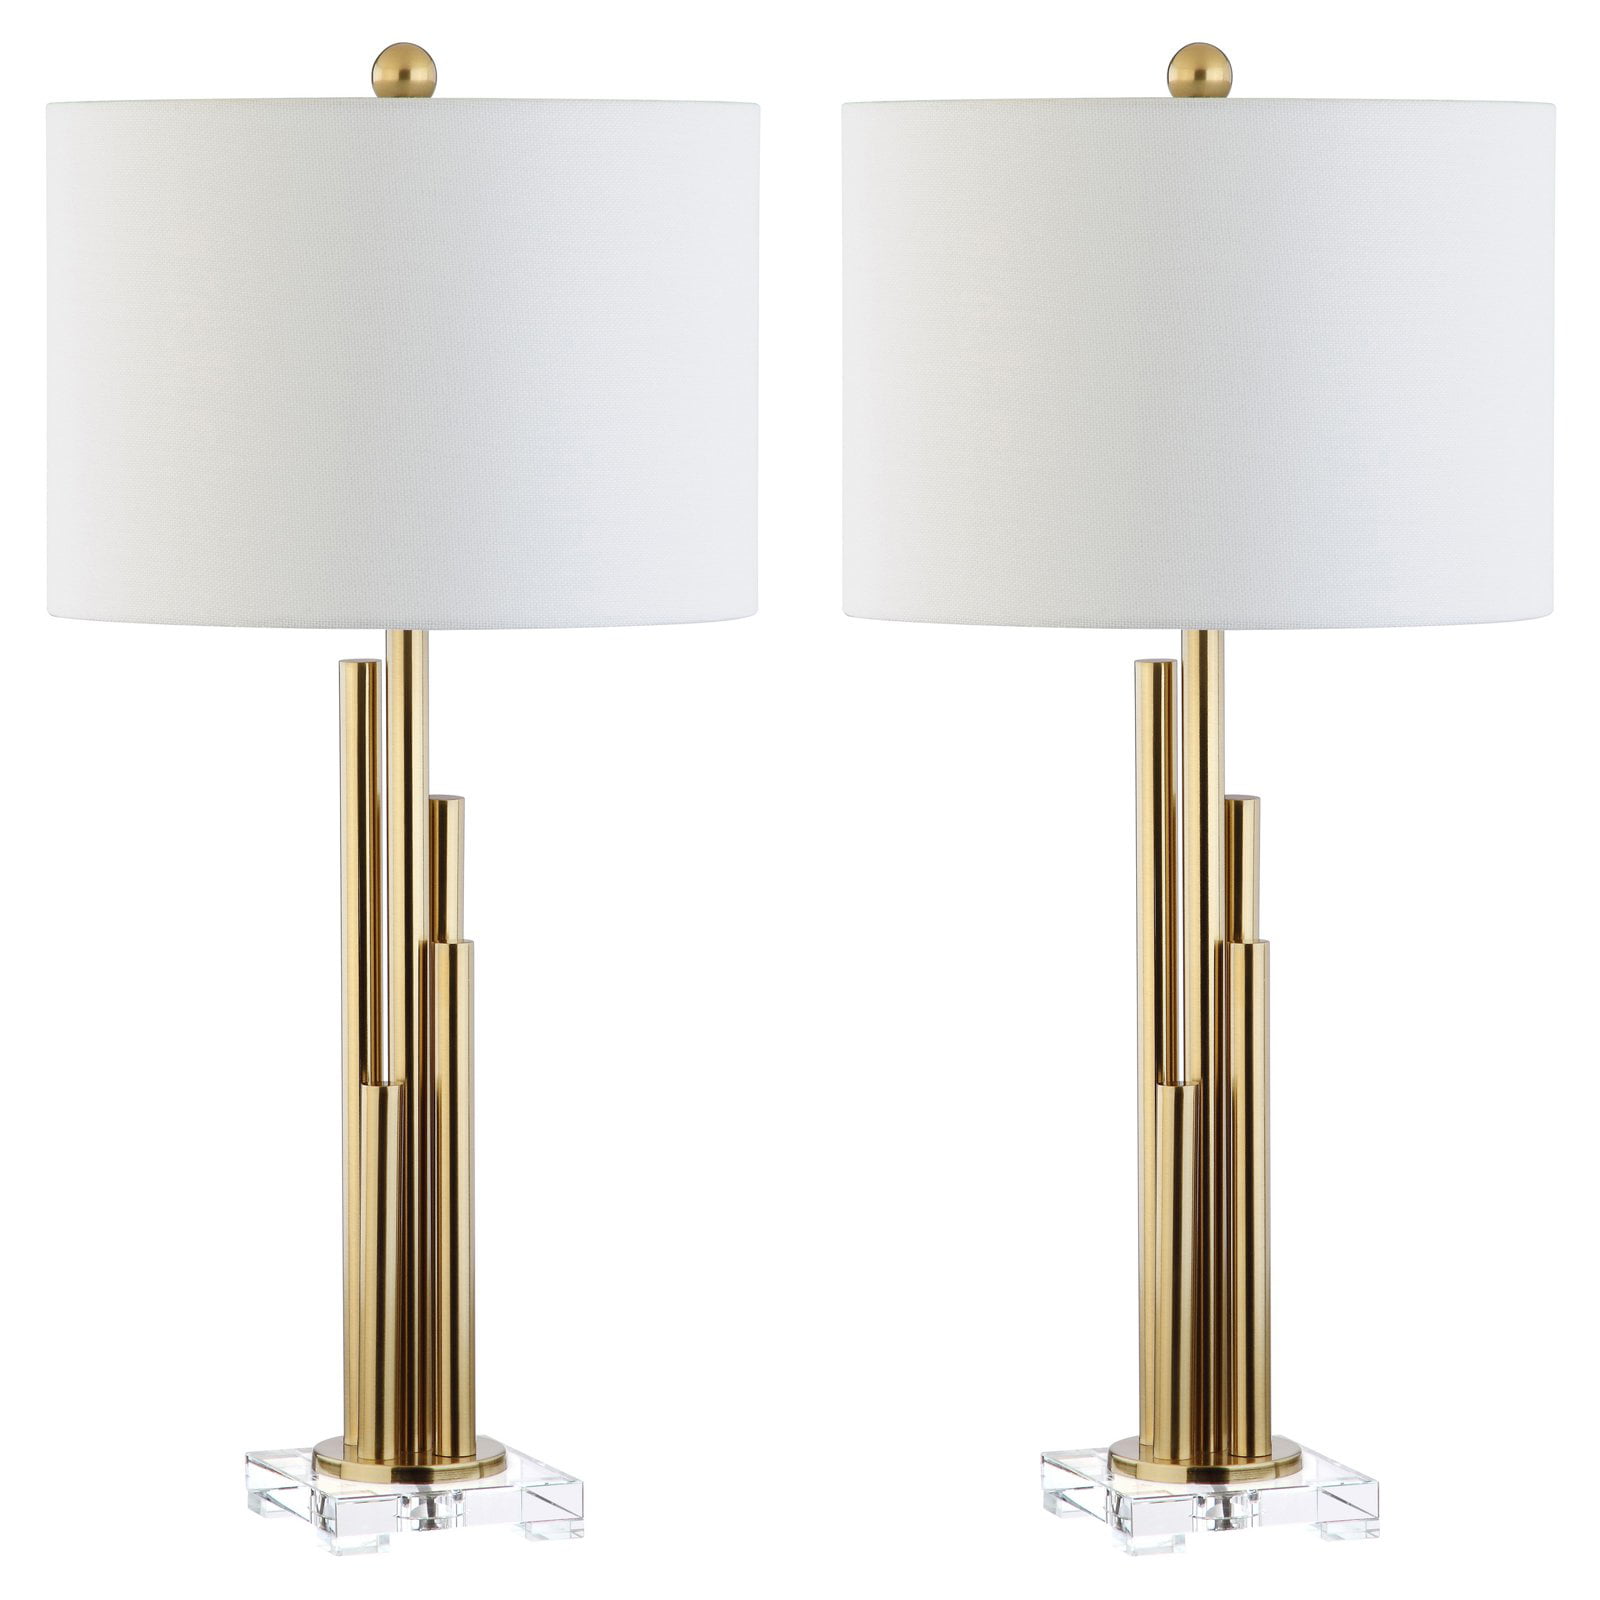 Safavieh Hopper Glam 32 in. High Table Lamp, Brass Gold, Set of 2